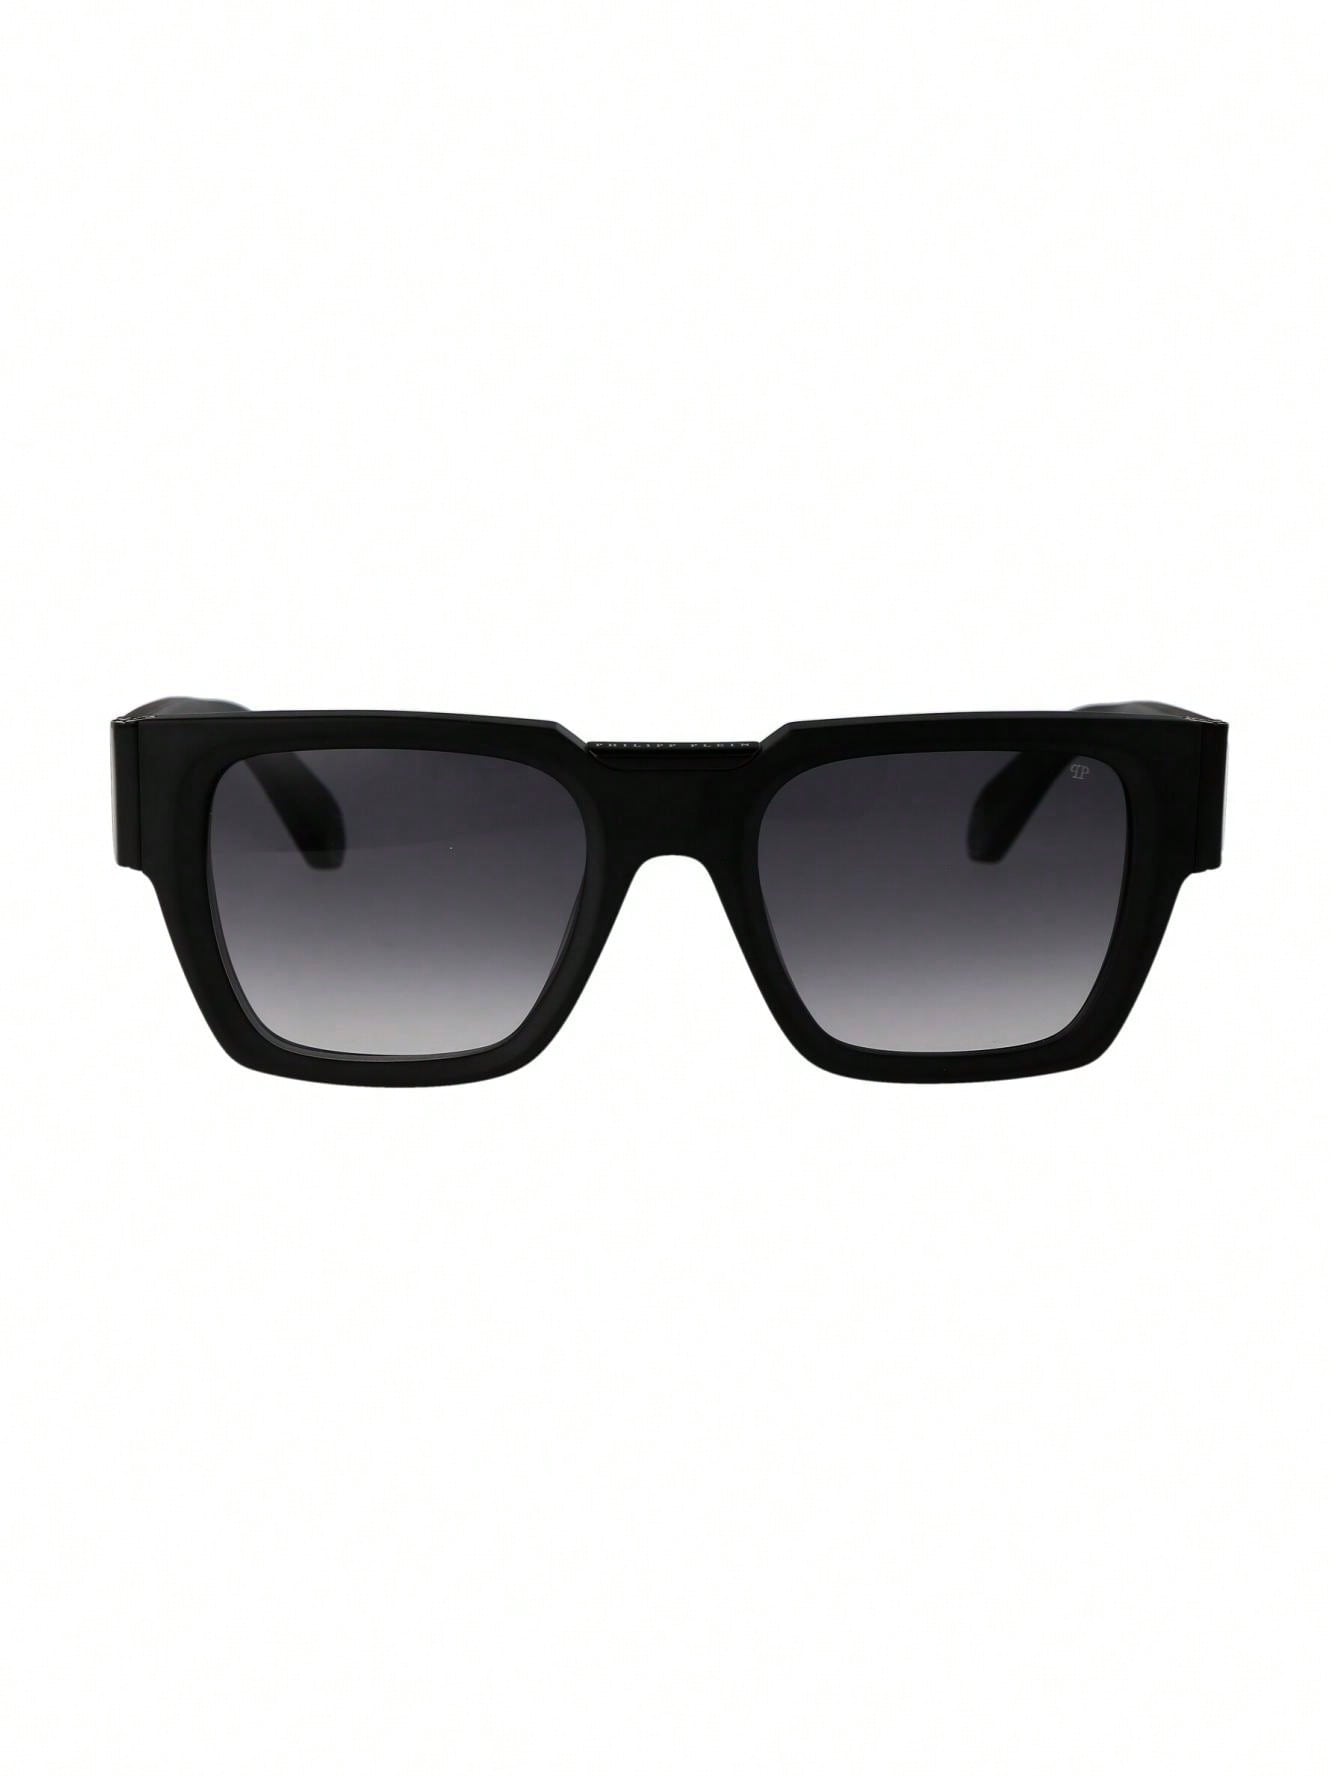 Мужские солнцезащитные очки Philipp Plein DECOR SPP095M0703, многоцветный